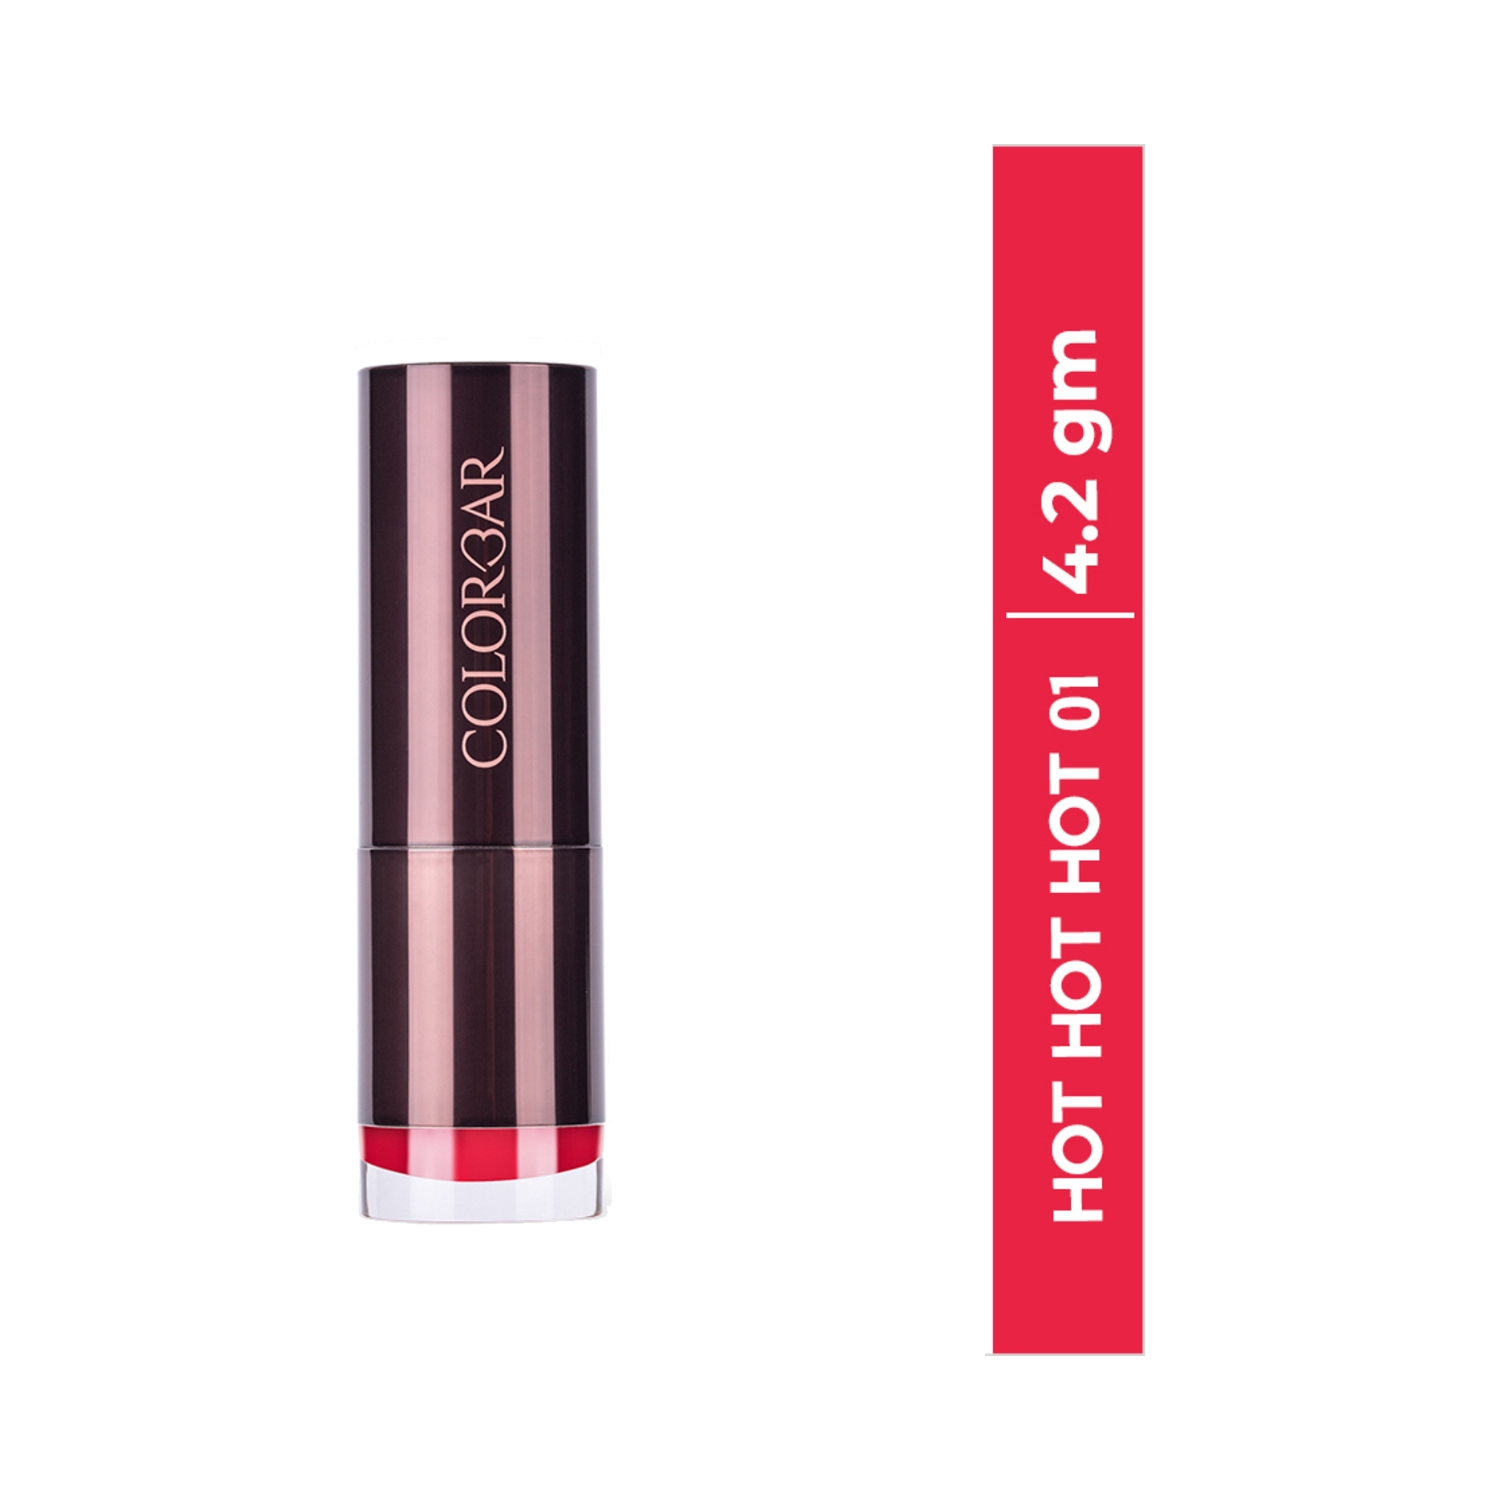 Colorbar | Colorbar Velvet Matte Lipstick - 01 Hot Hot Hot (4.2g)